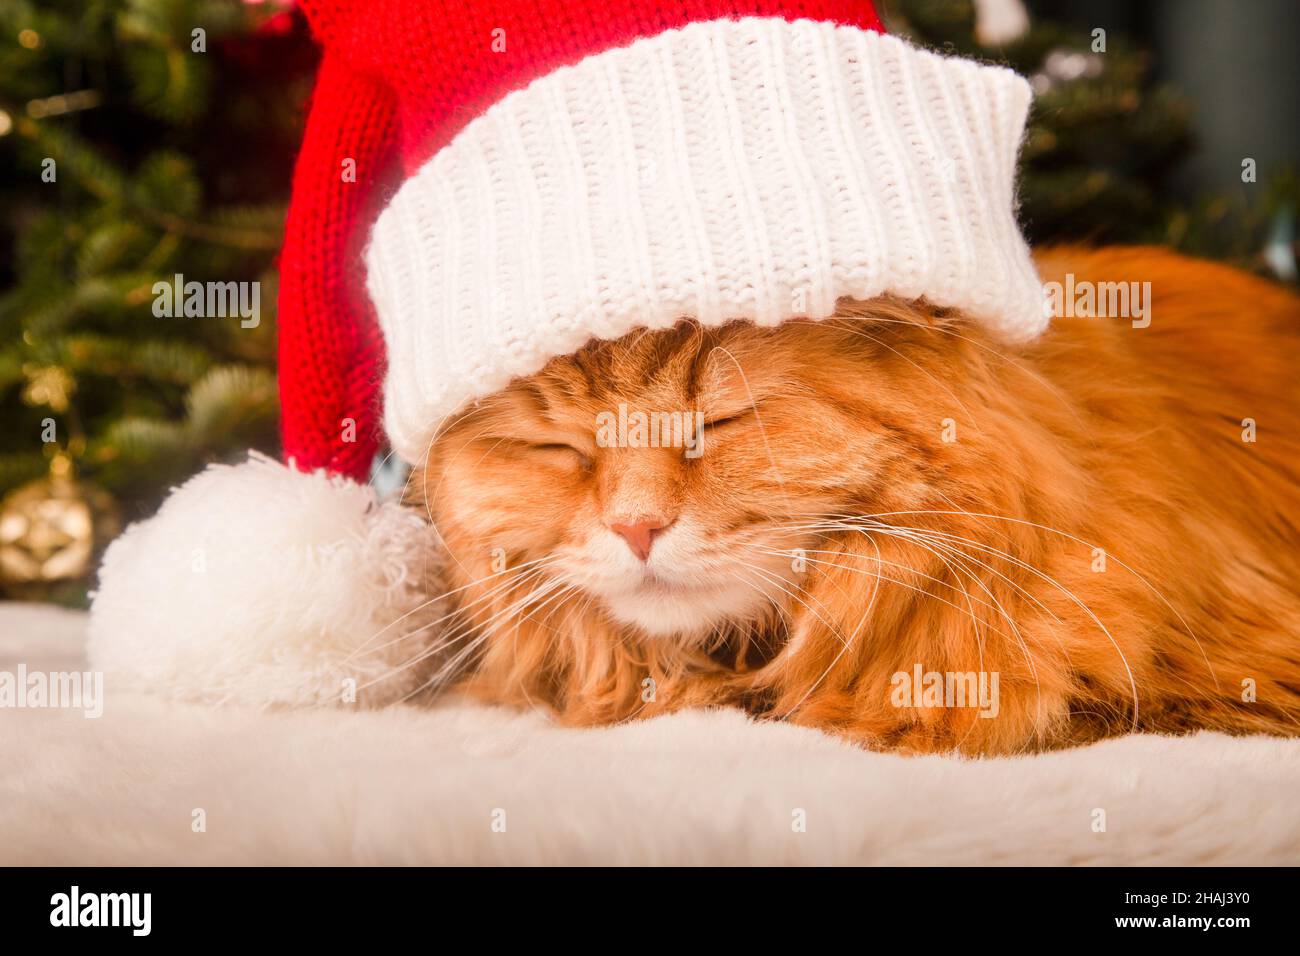 Un joli chat rouge moelleux dans un chapeau de père noël avec chruistmas décoré à l'arrière.Carte de Noël Banque D'Images